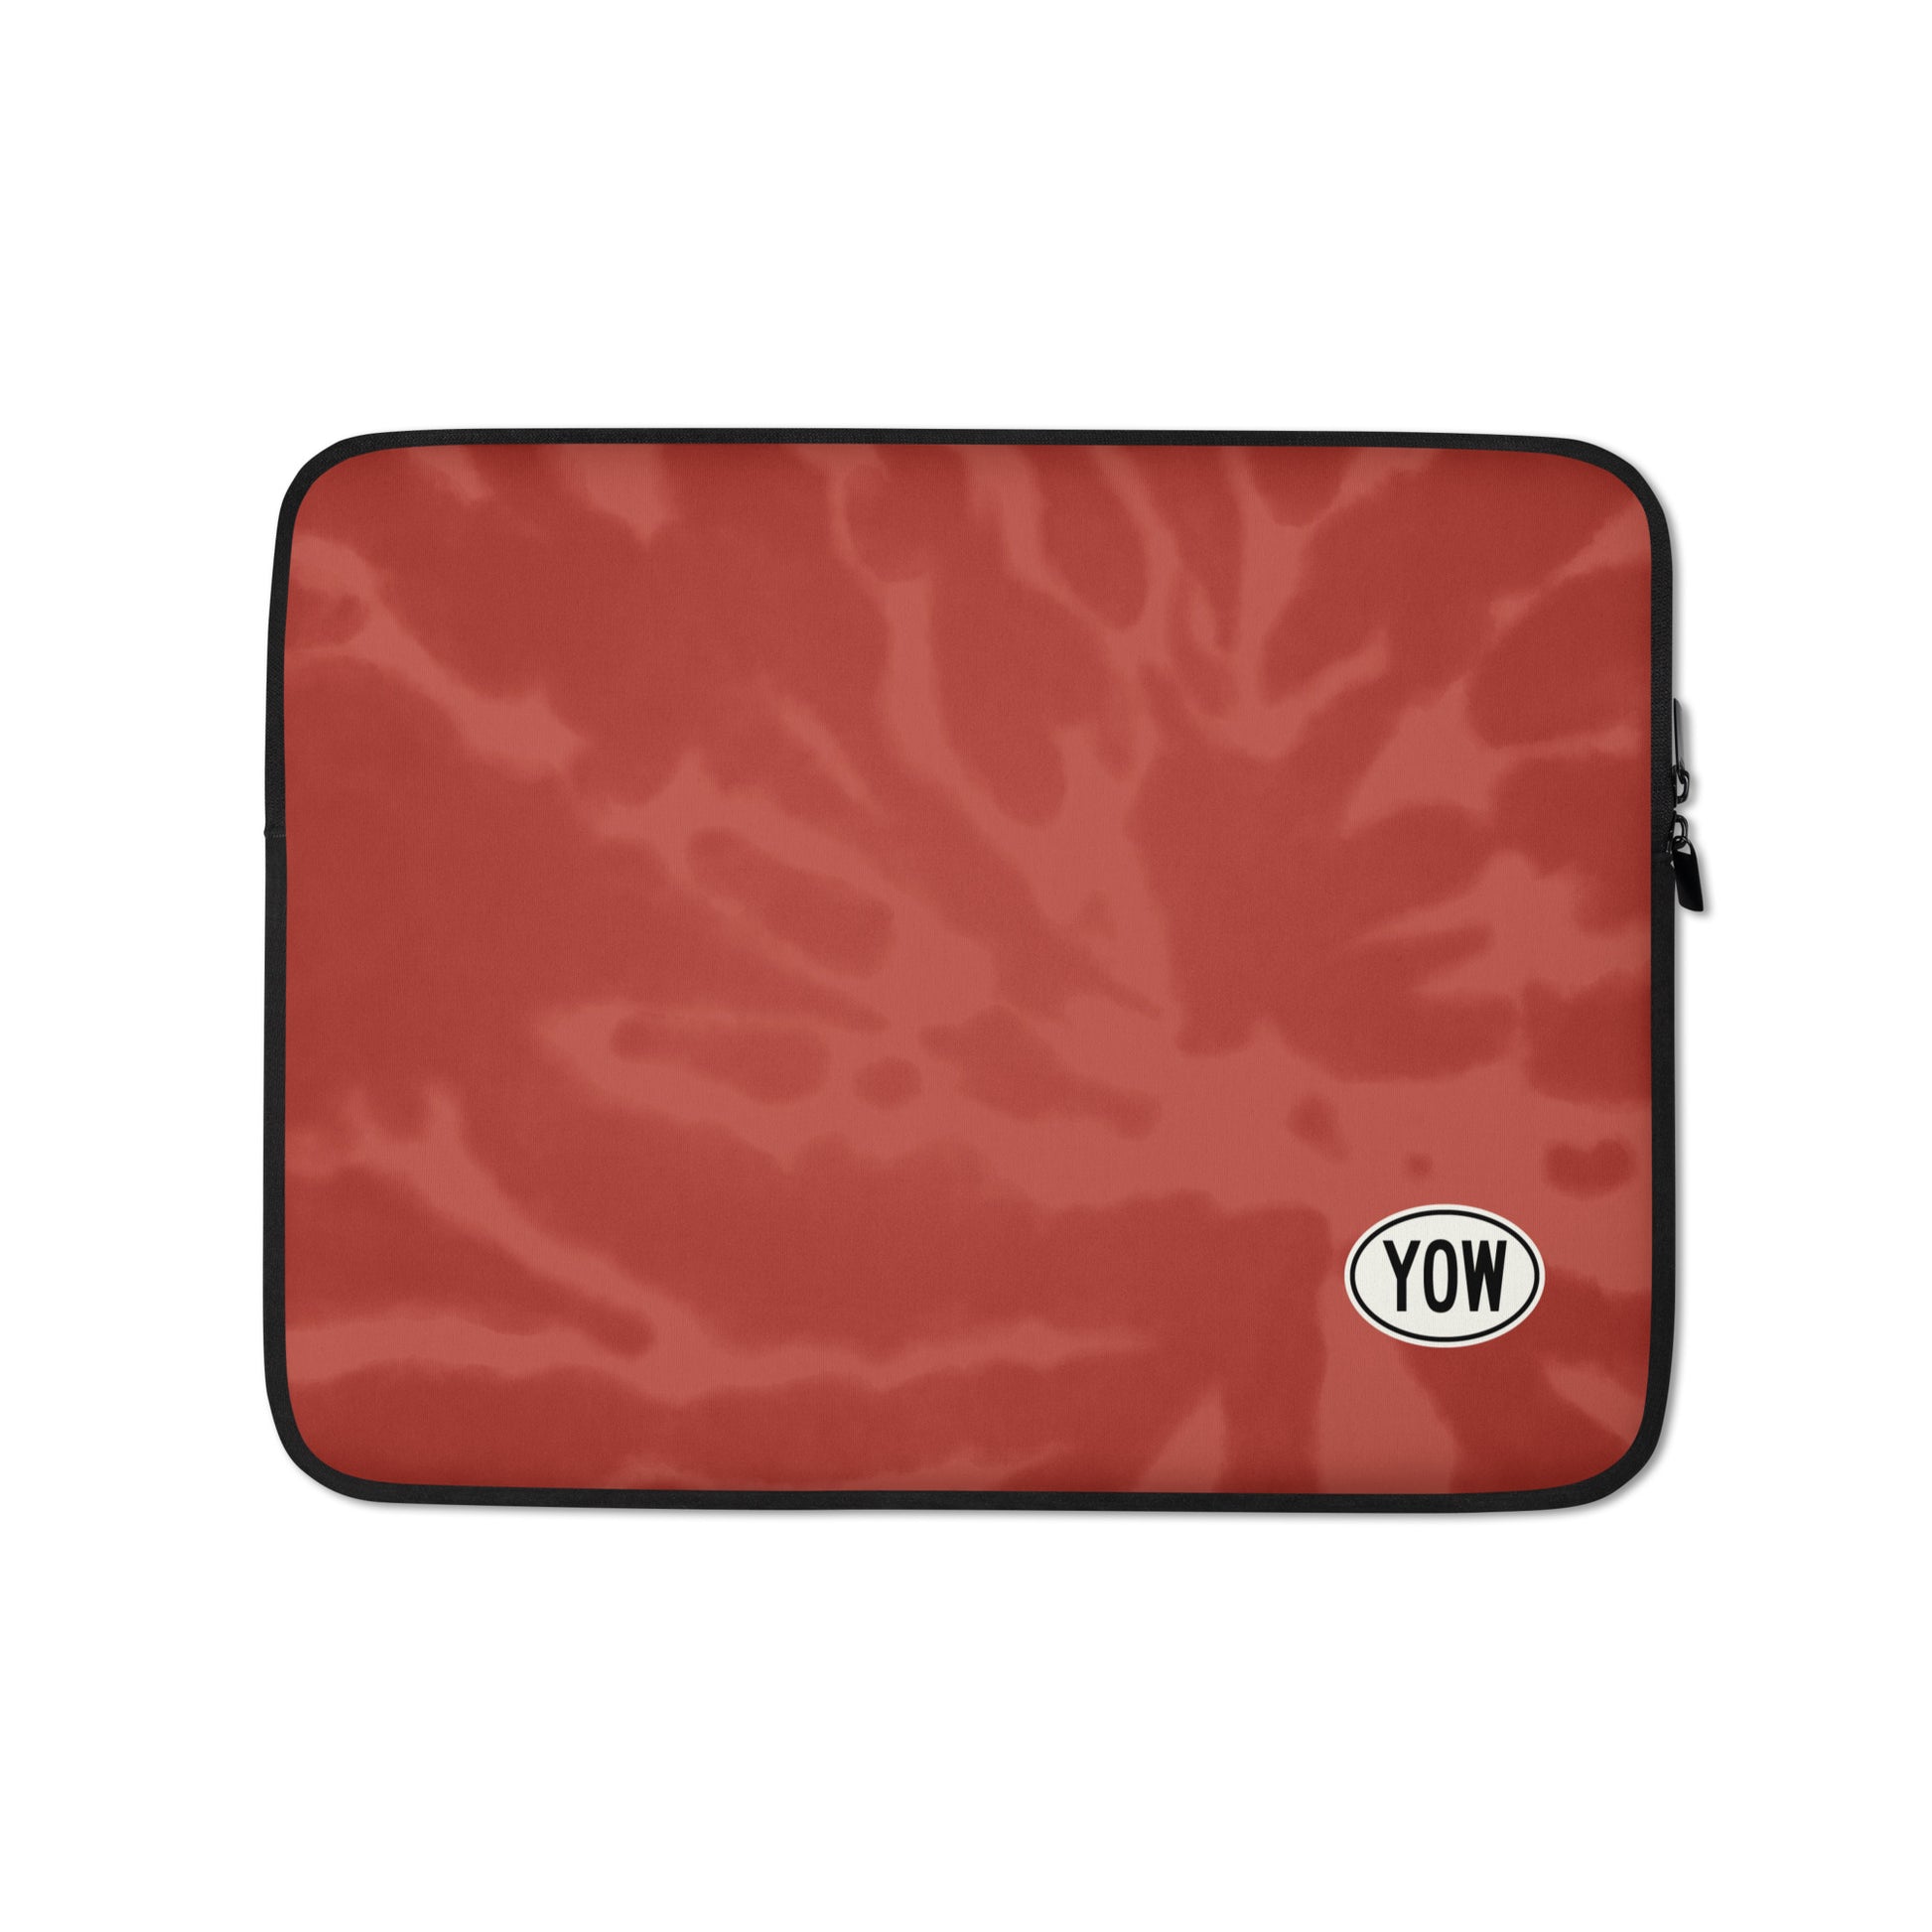 Travel Gift Laptop Sleeve - Red Tie-Dye • YOW Ottawa • YHM Designs - Image 01